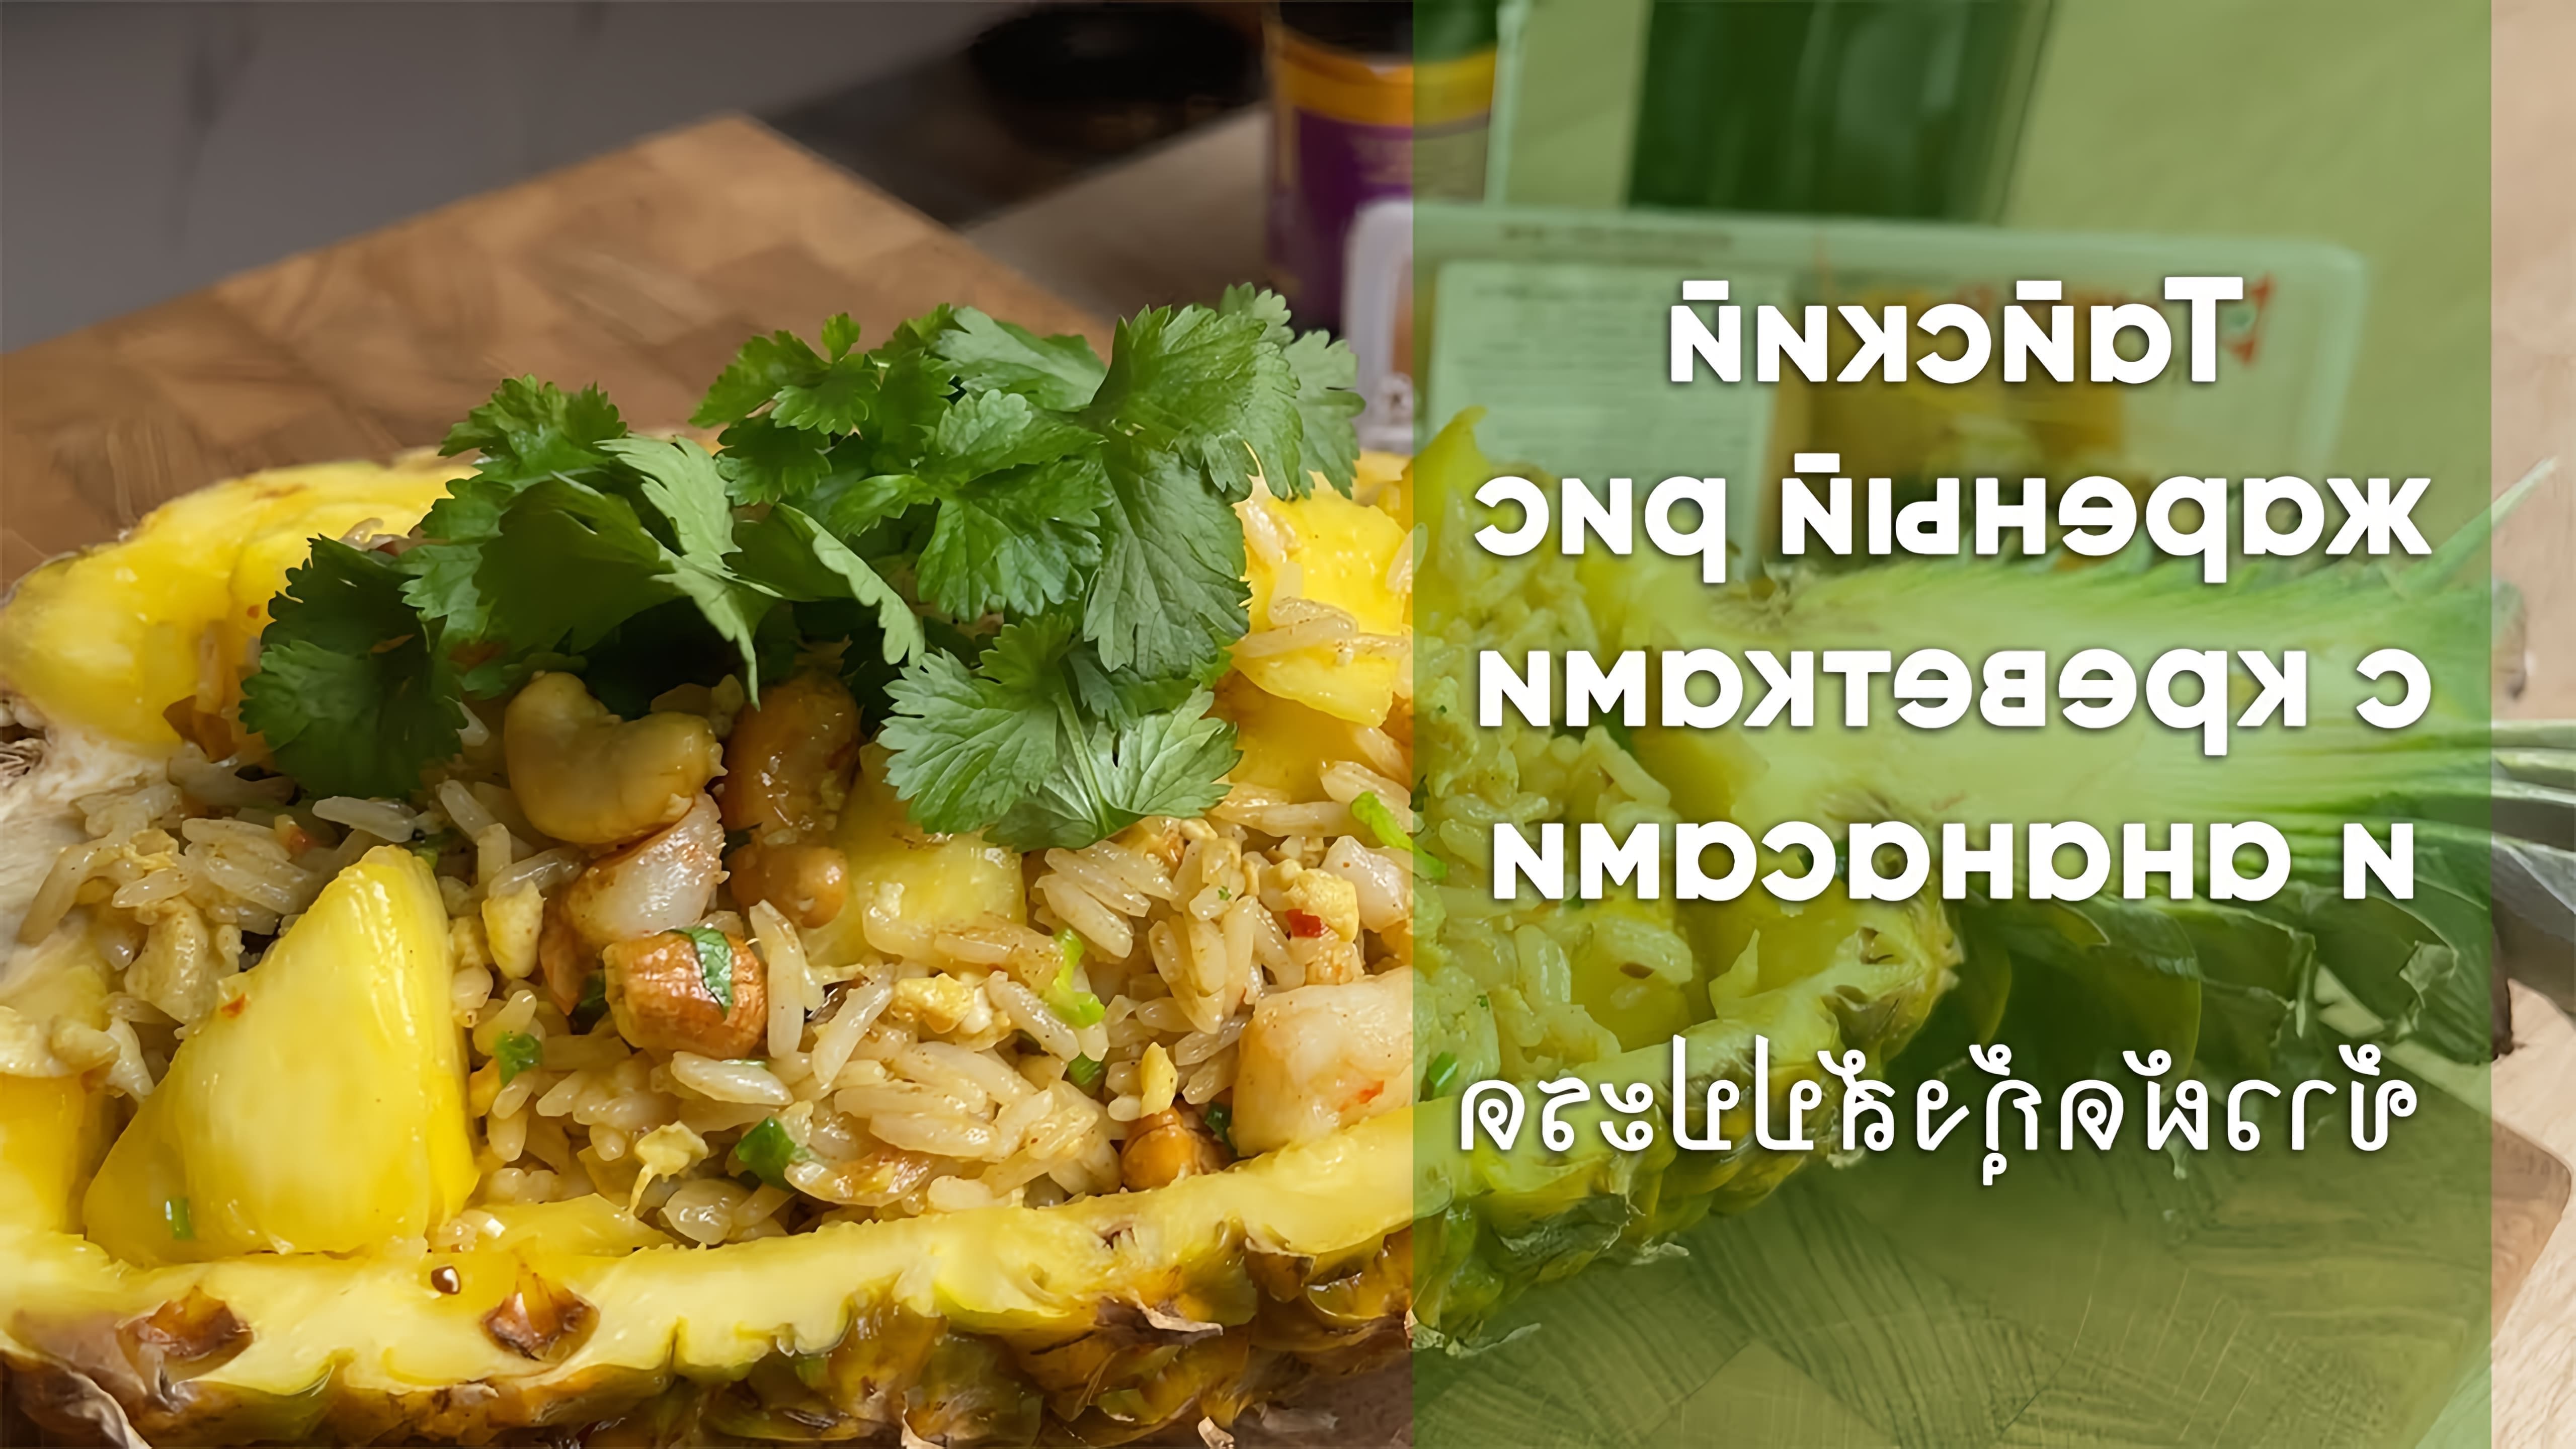 В этом видео демонстрируется рецепт тайского жареного риса с креветками и ананасами